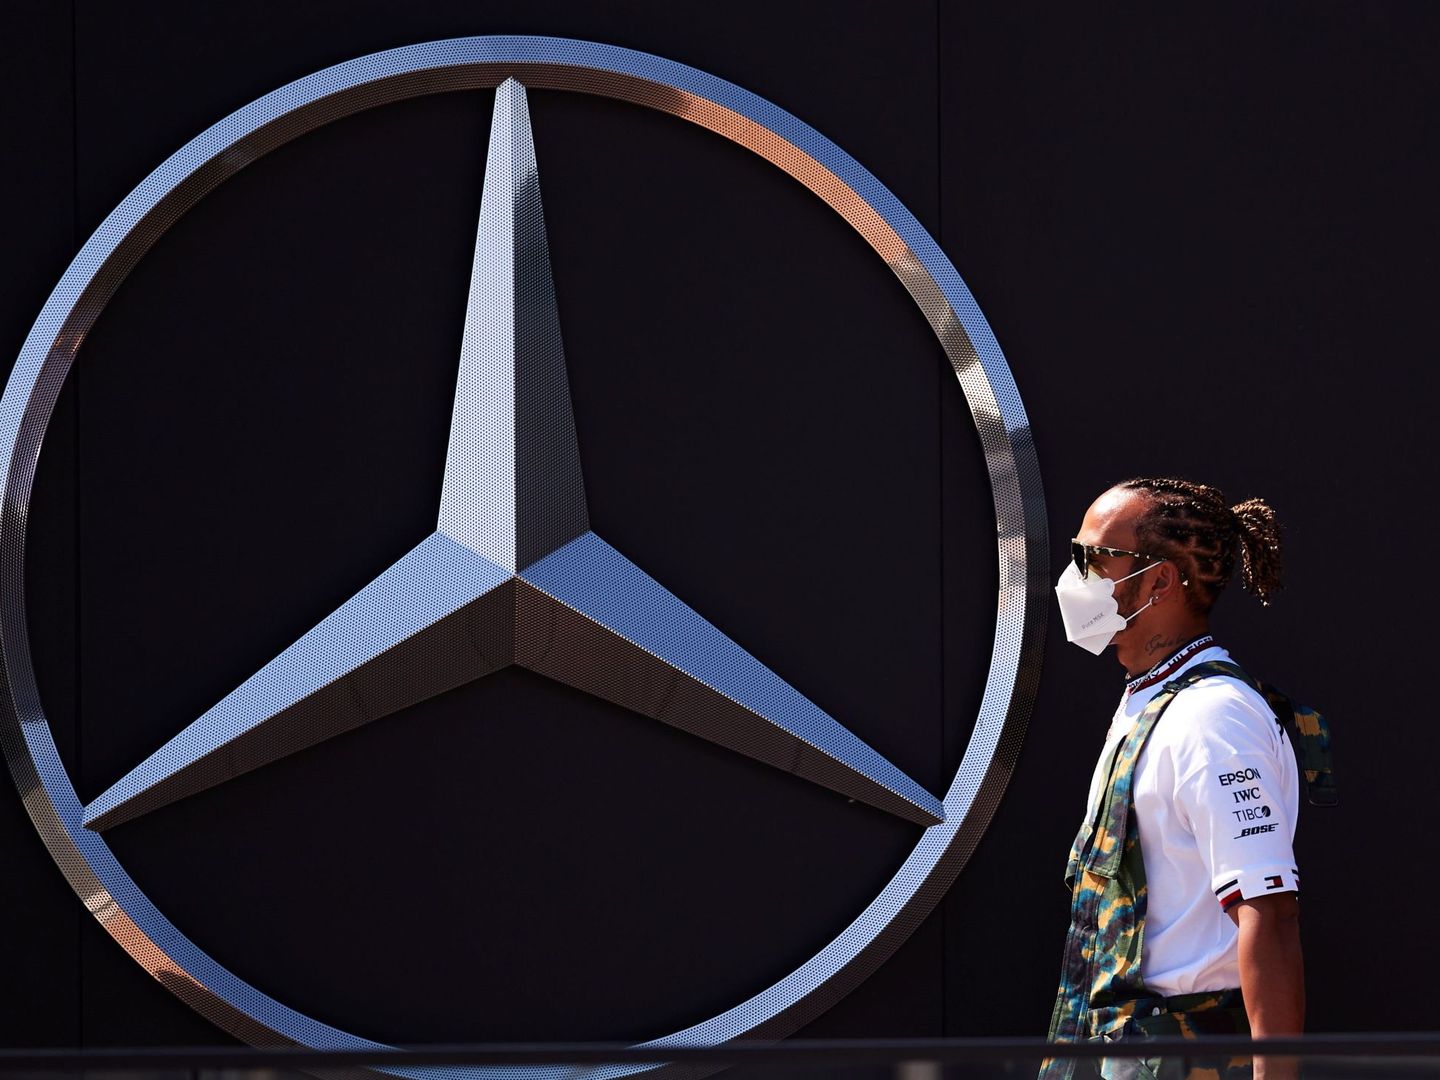 En su estrategia para los próximos años, Mercedes sigue considerando el motor de combustión para millones de vehículos en todo el mundo